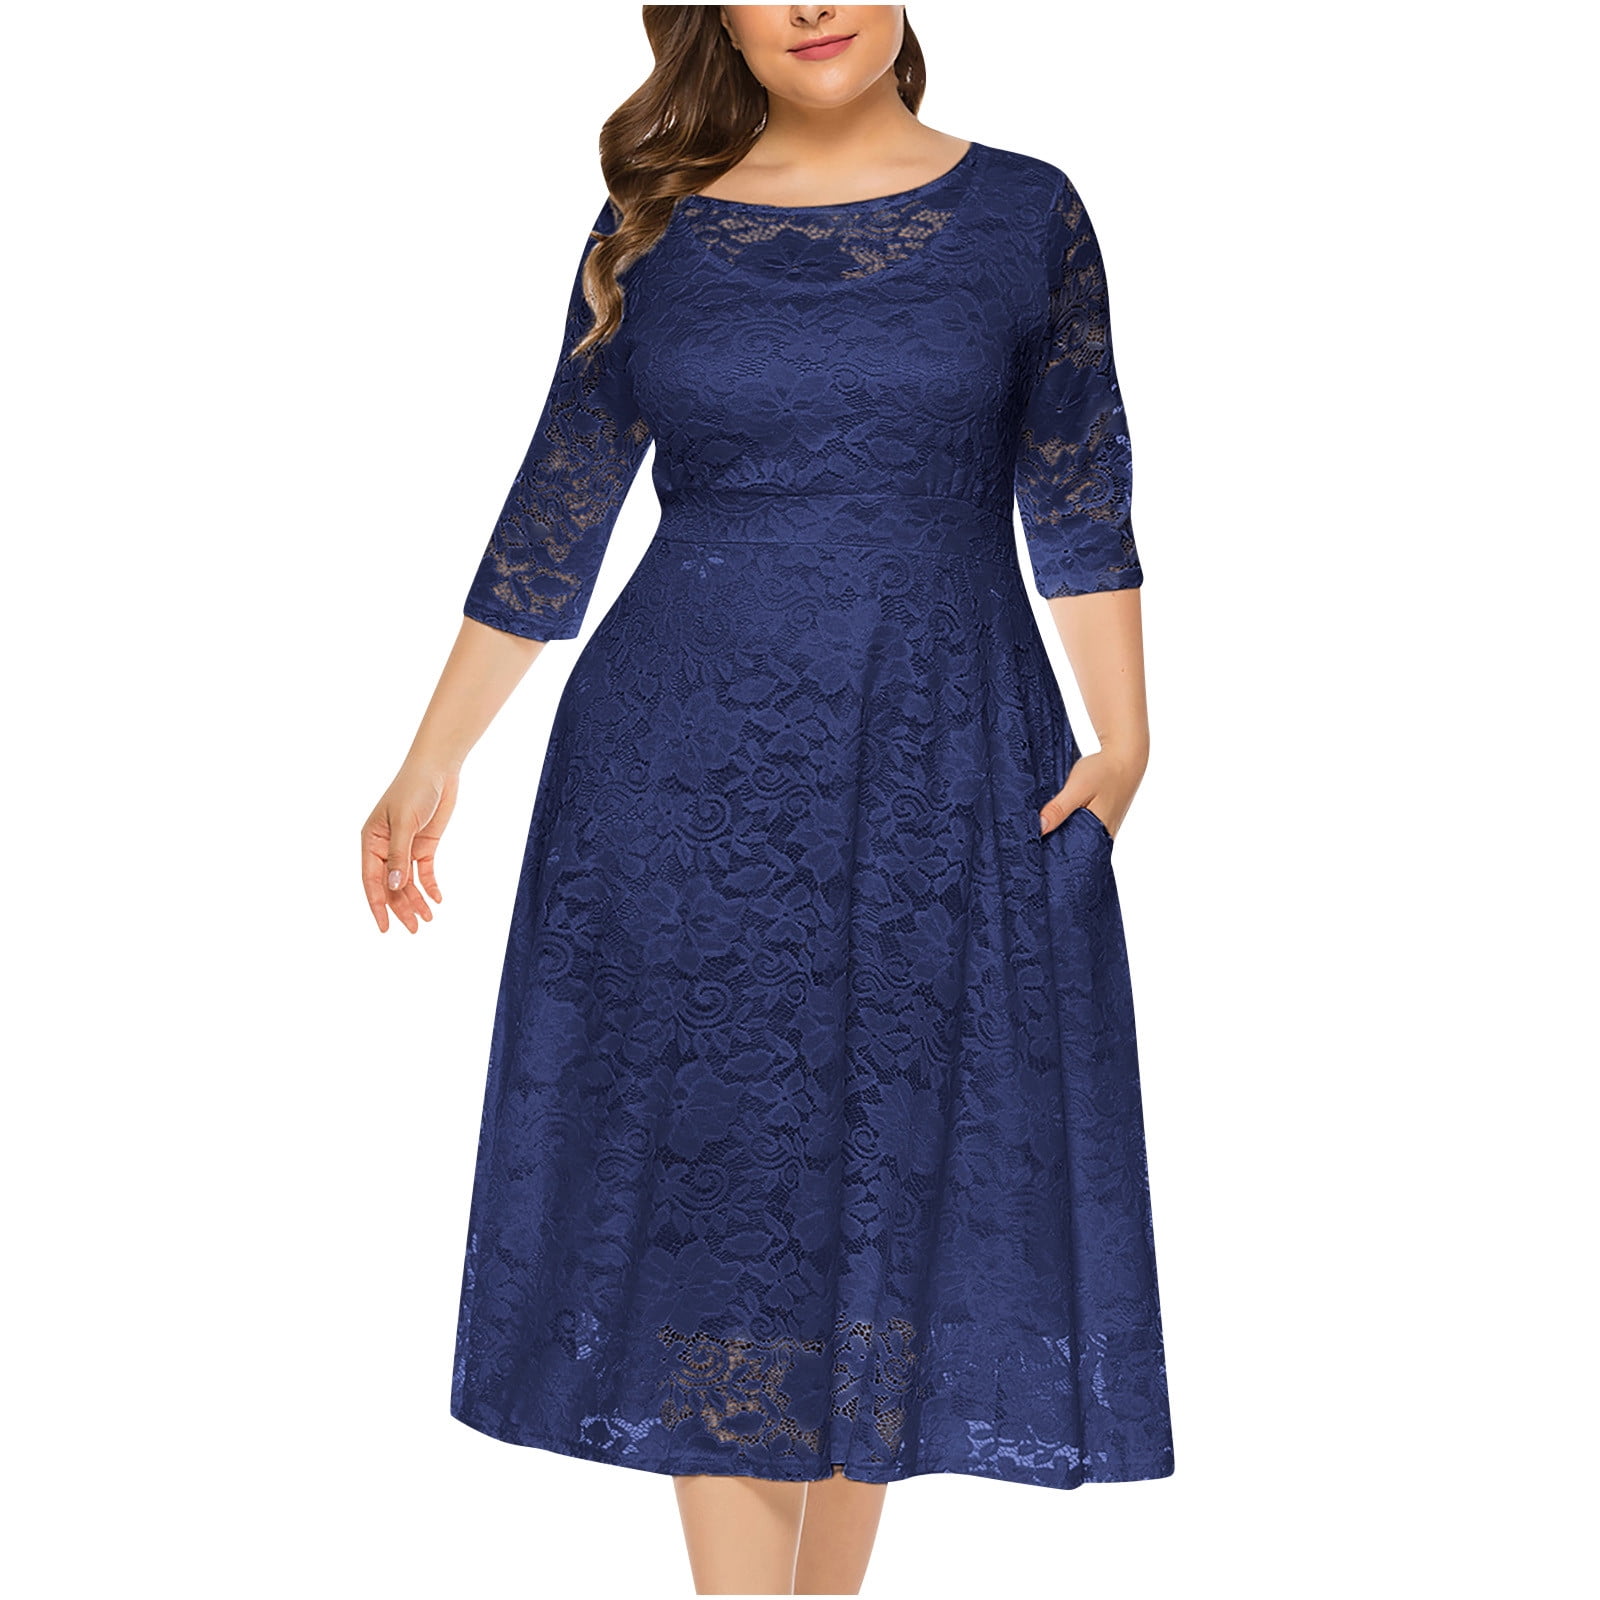 Fesfesfes Plus Size Dress for Women Mesh Lace Splicing Semi Formal ...